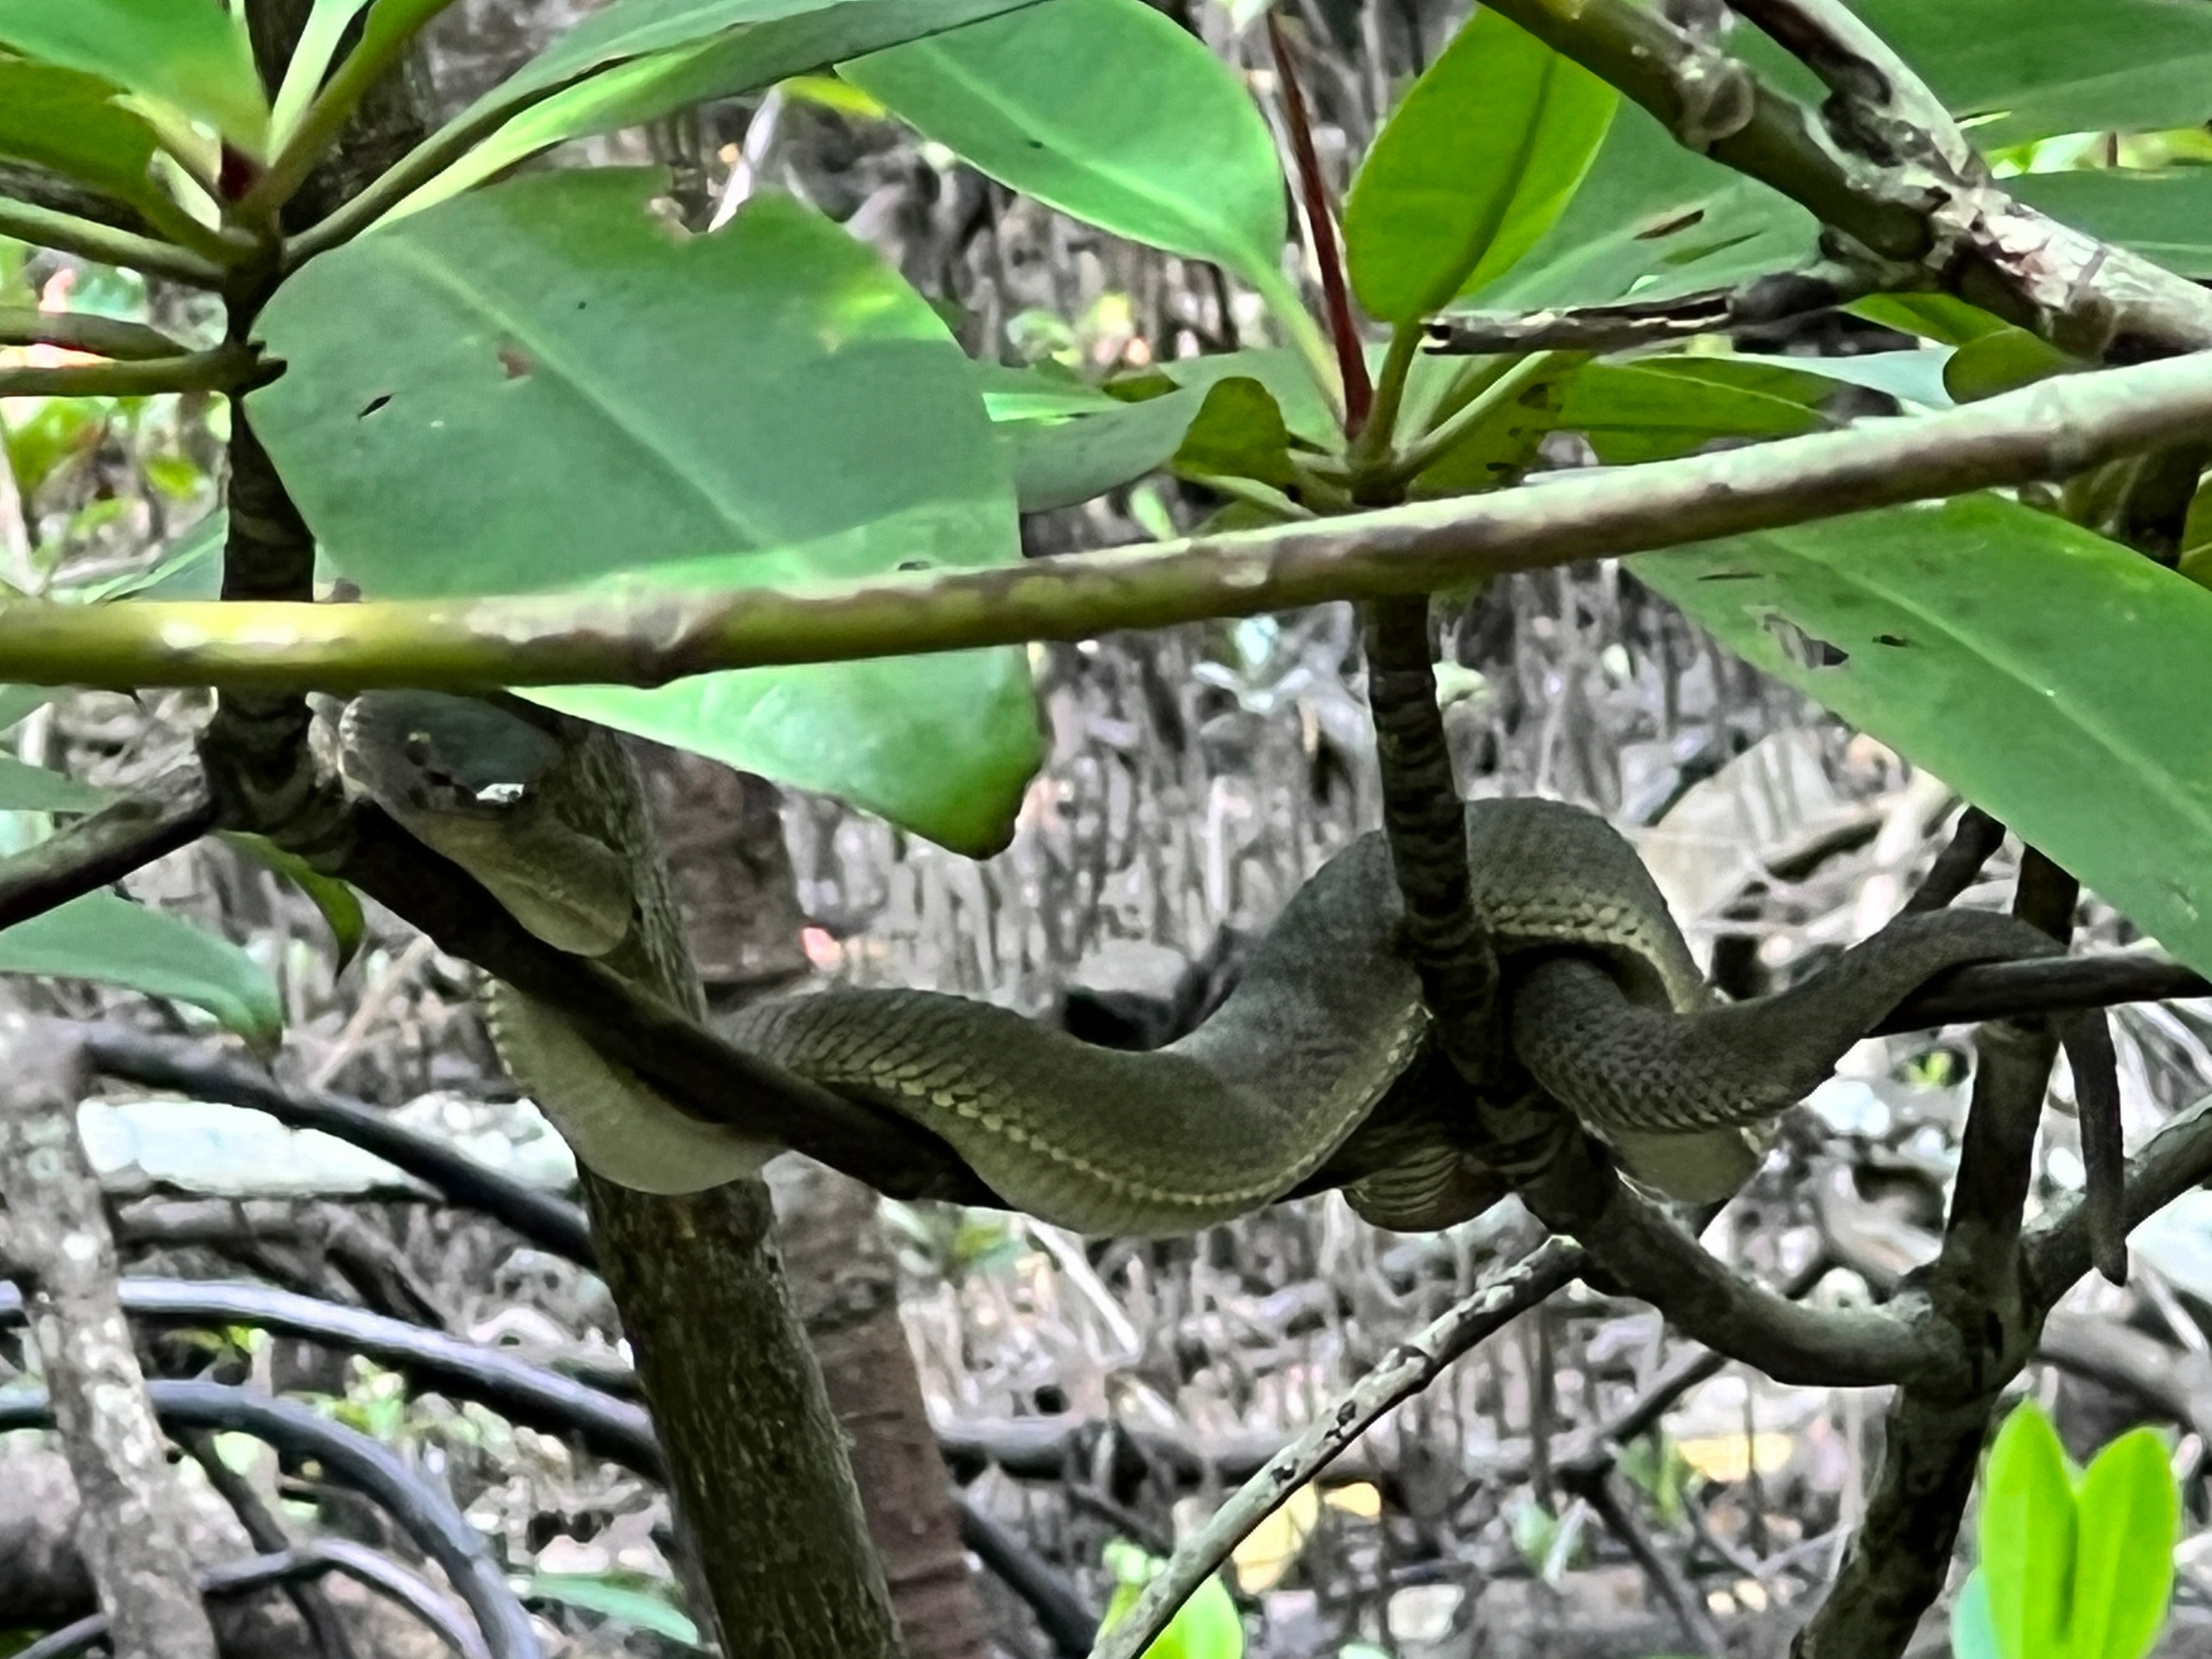 Mangrove pit viper 